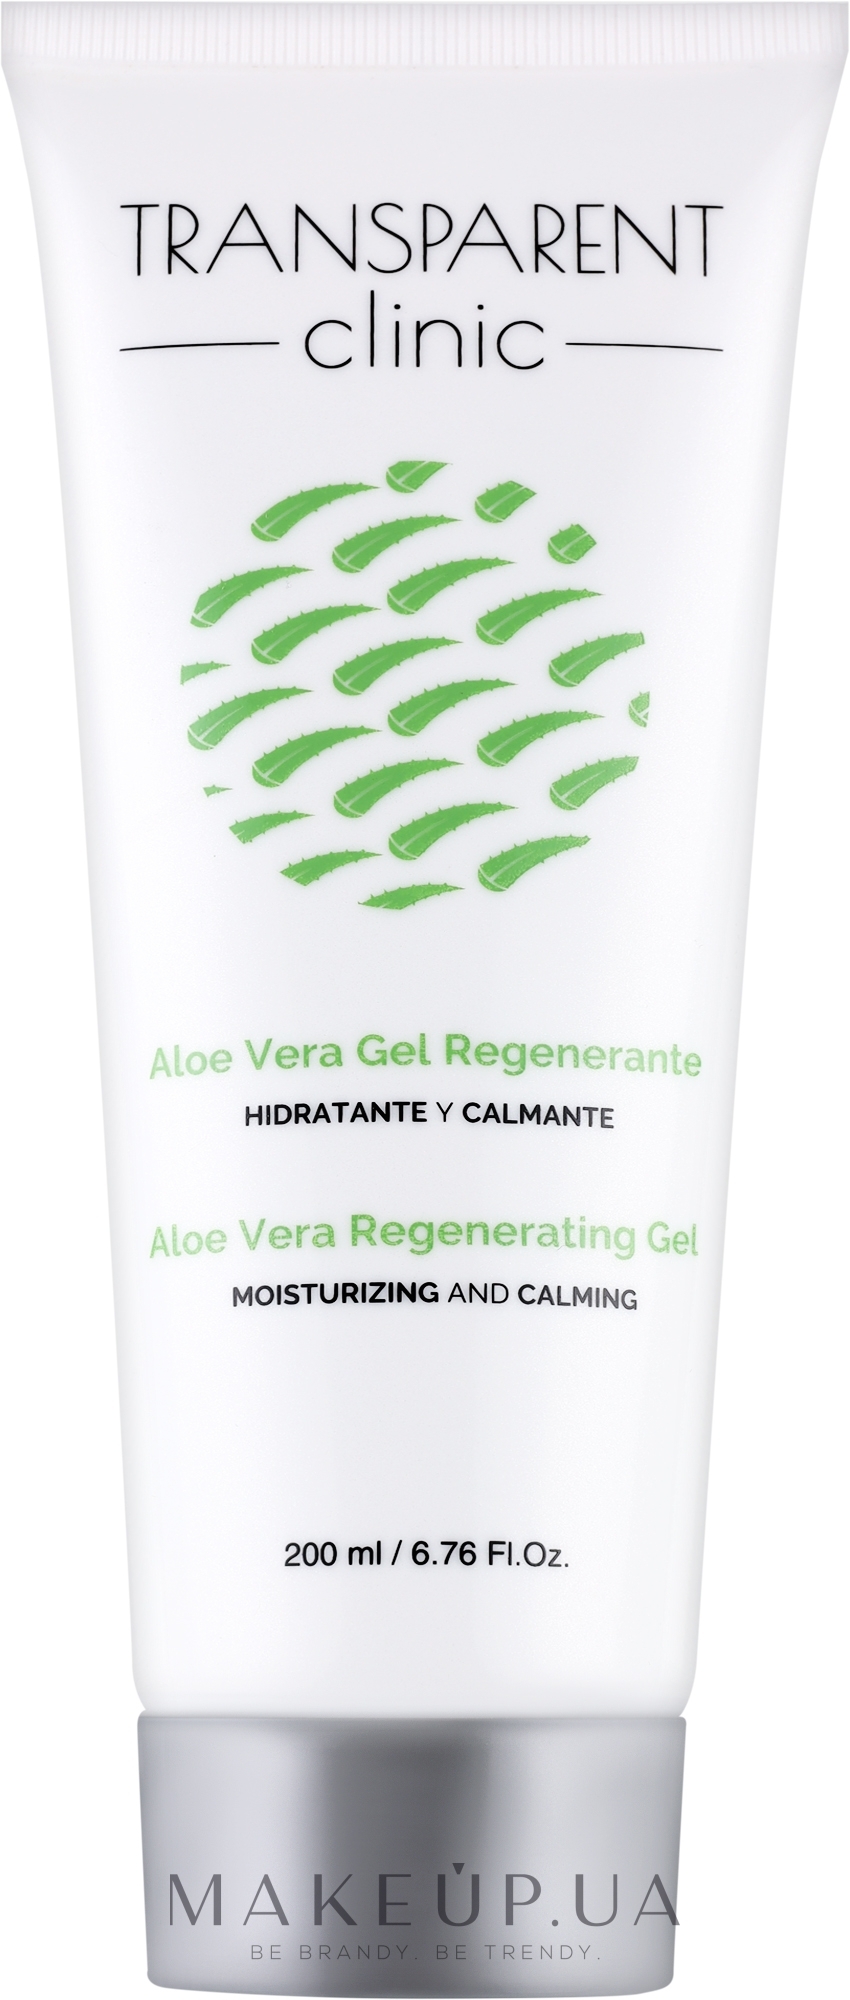 Гель для тела - Transparent Clinic Aloe Vera Regeneranting Gel  — фото 200ml